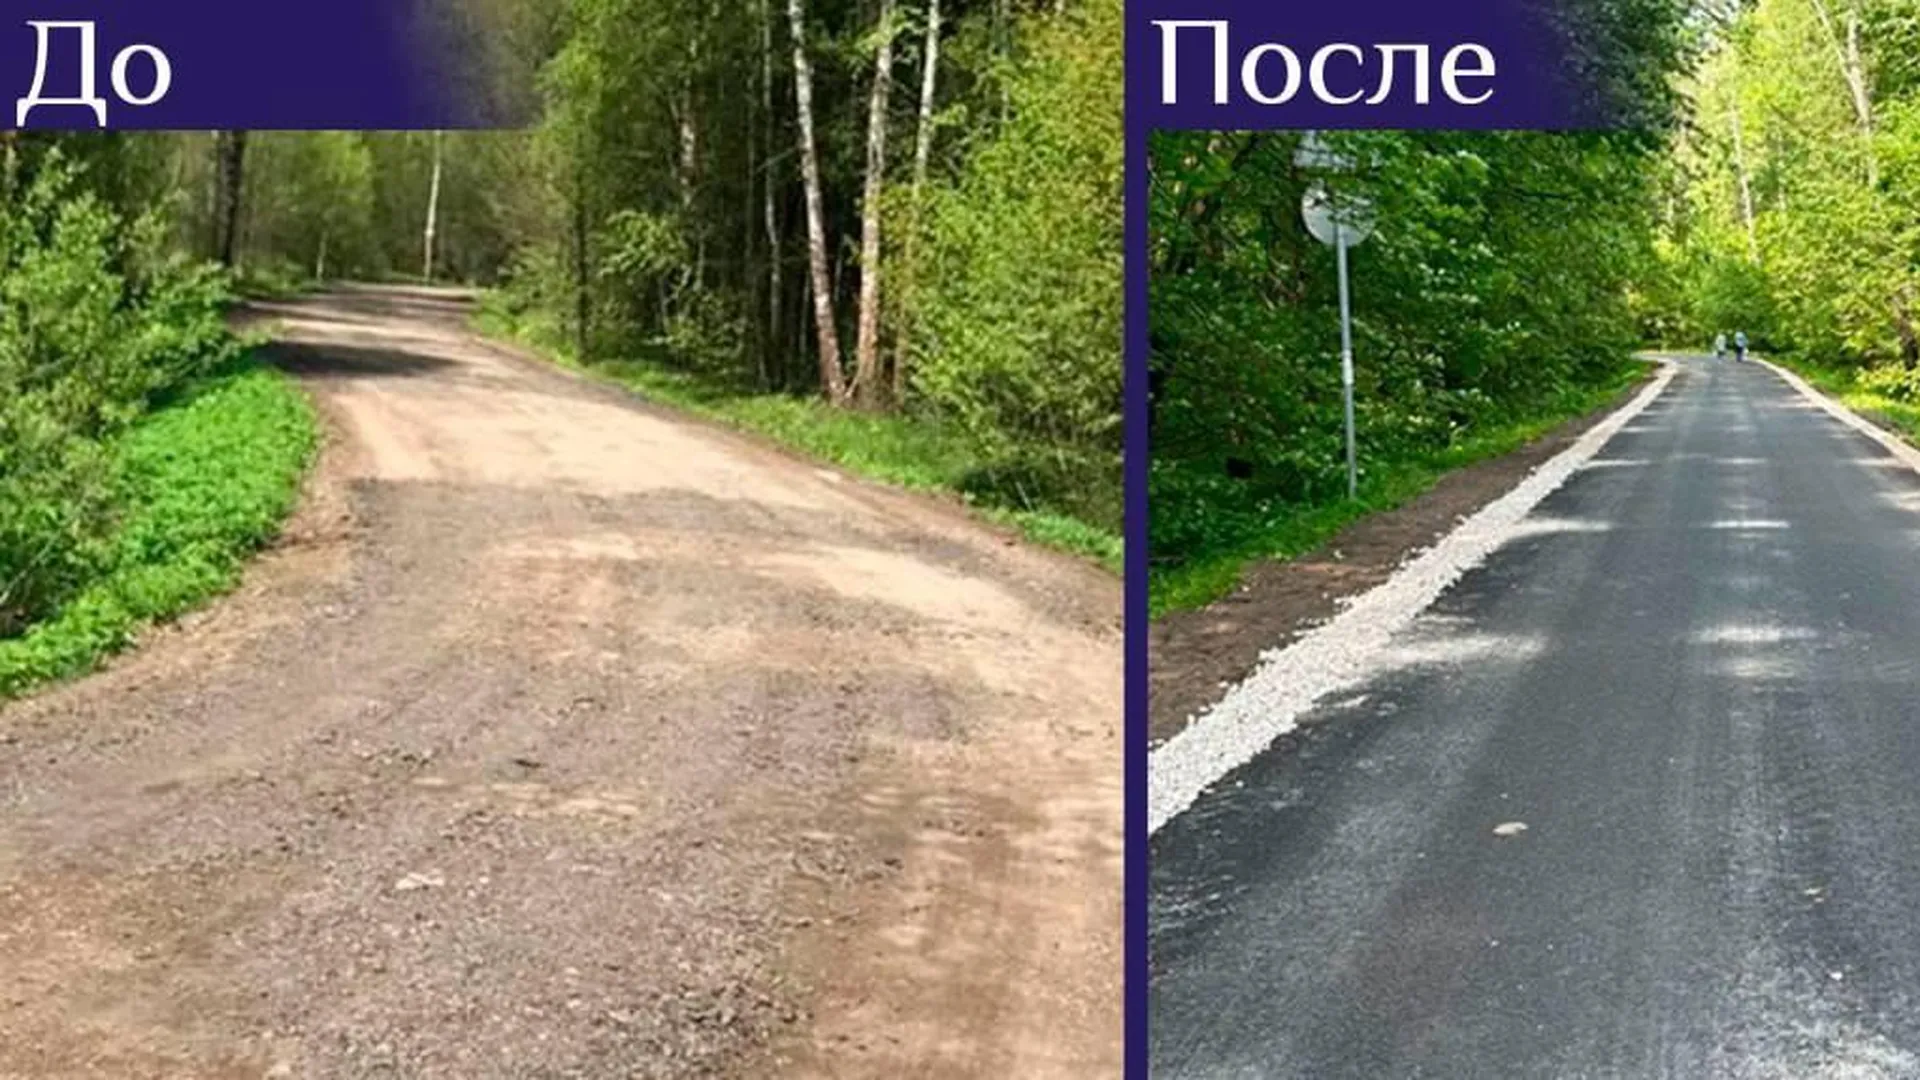 В этом году в Подольске капитально отремонтировали 31 участок дорог